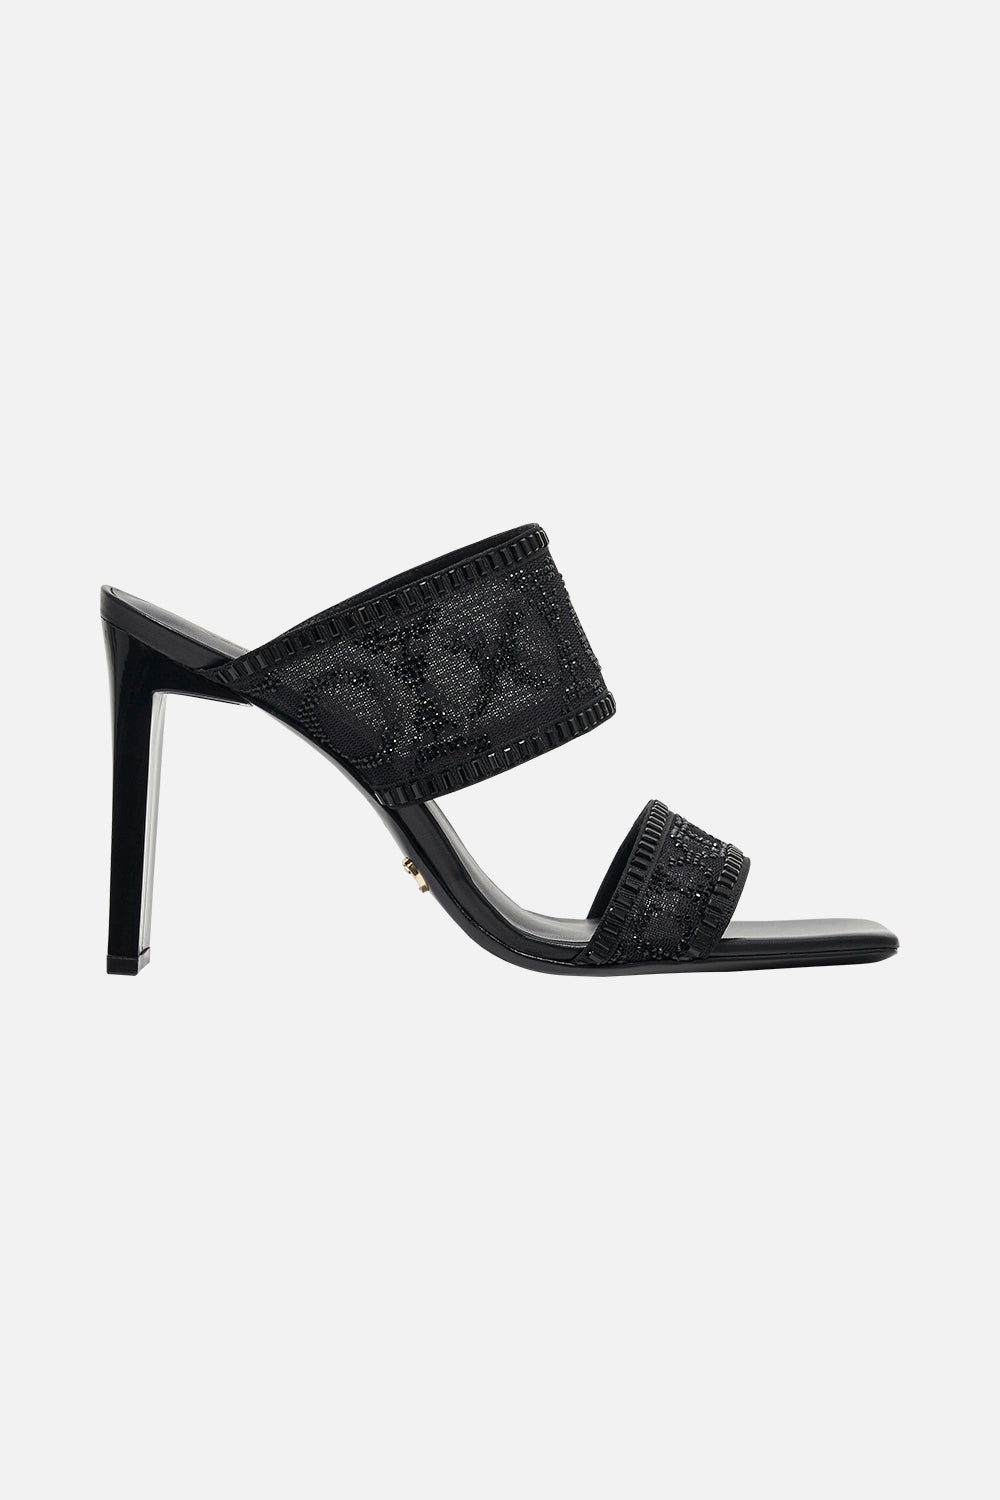 Alexia Slim Block Heel Mule Solid Black print by CAMILLA